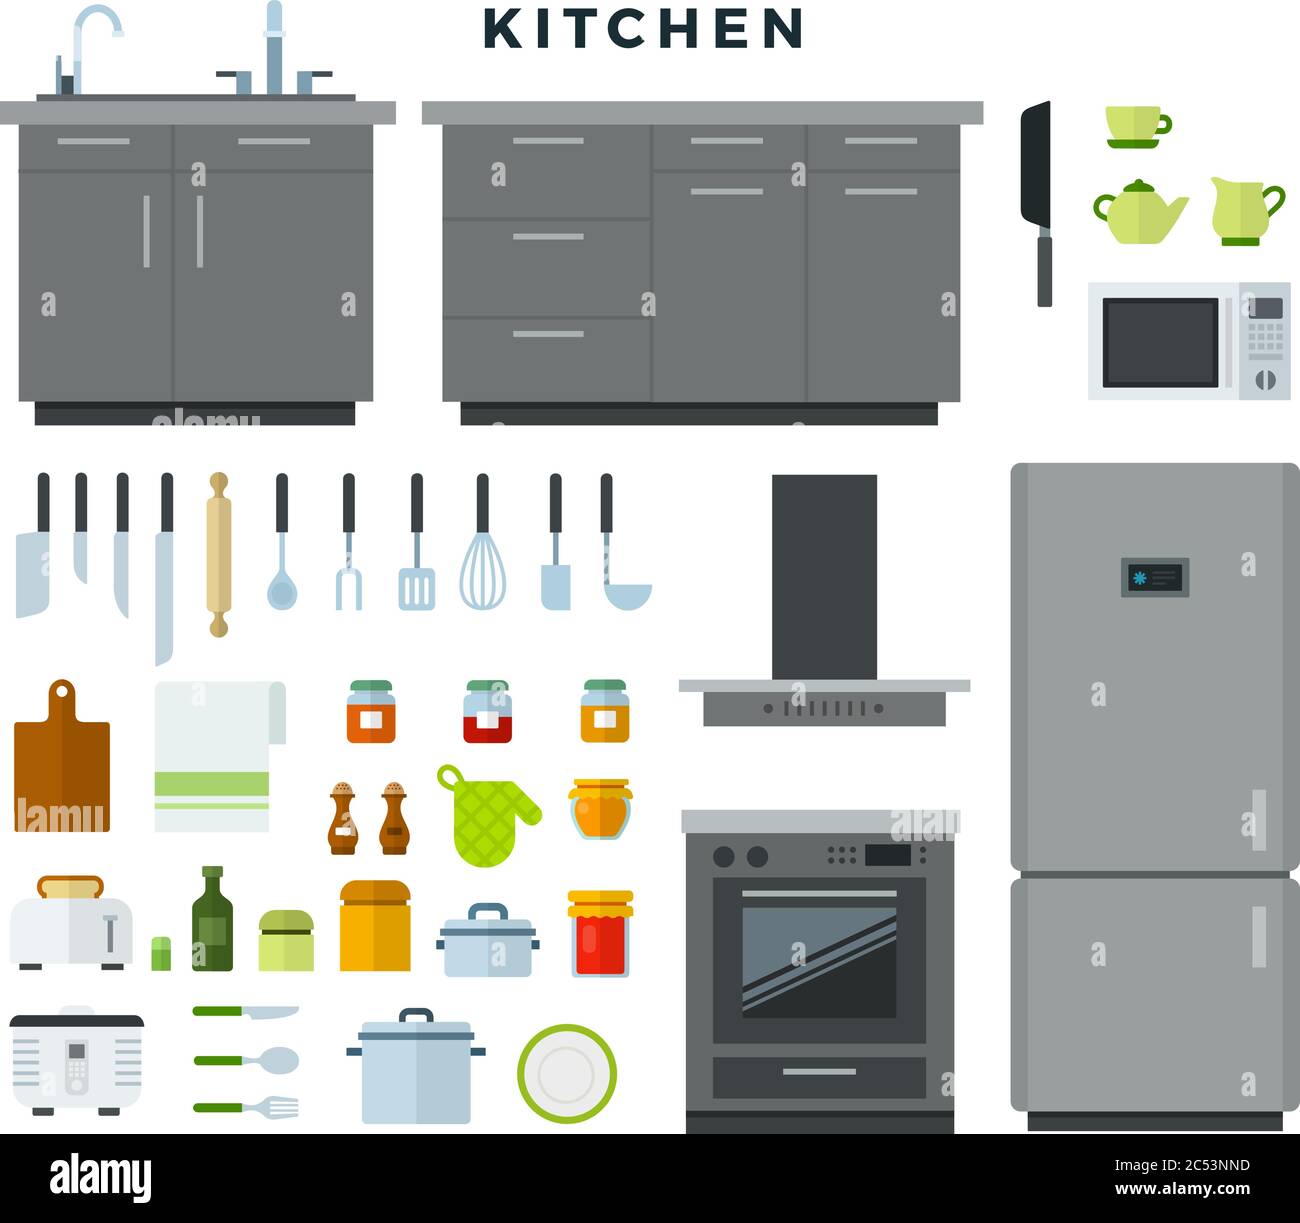 https://c8.alamy.com/compes/2c53nnd/coleccion-de-utensilios-de-cocina-electrodomesticos-equipo-muebles-ilustracion-vectorial-en-estilo-plano-2c53nnd.jpg